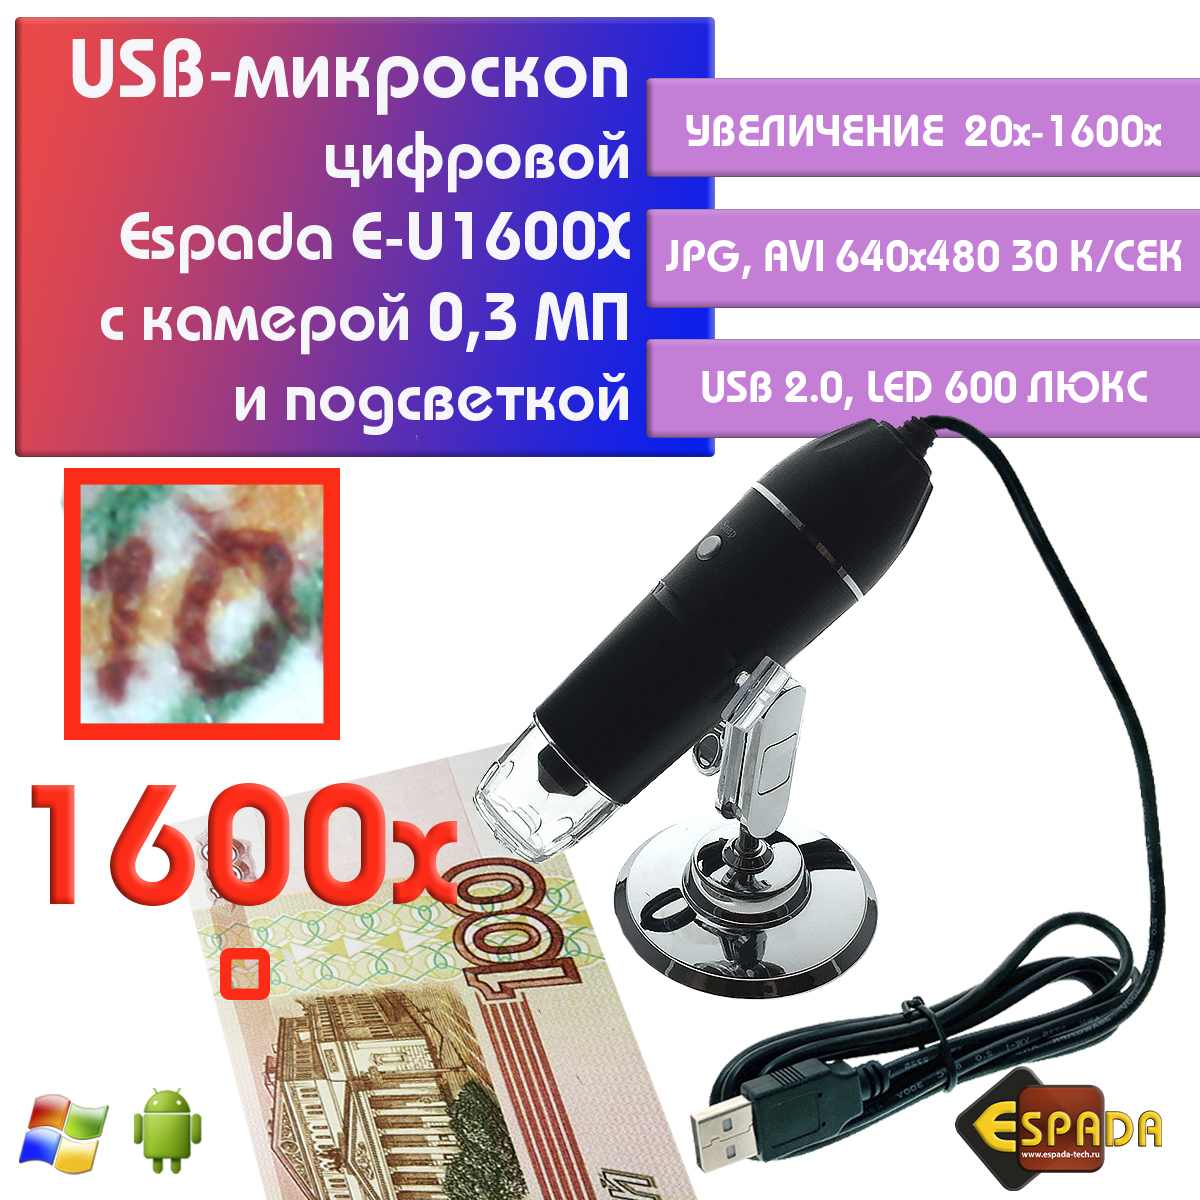 Портативный цифровой USB-микроскоп Espada E-U1600X c камерой 0,3 МП и увеличением 1600x видеокарта kfa2 pcie16 rtx3060ti 8g gddr6x 36ism6md1gsk